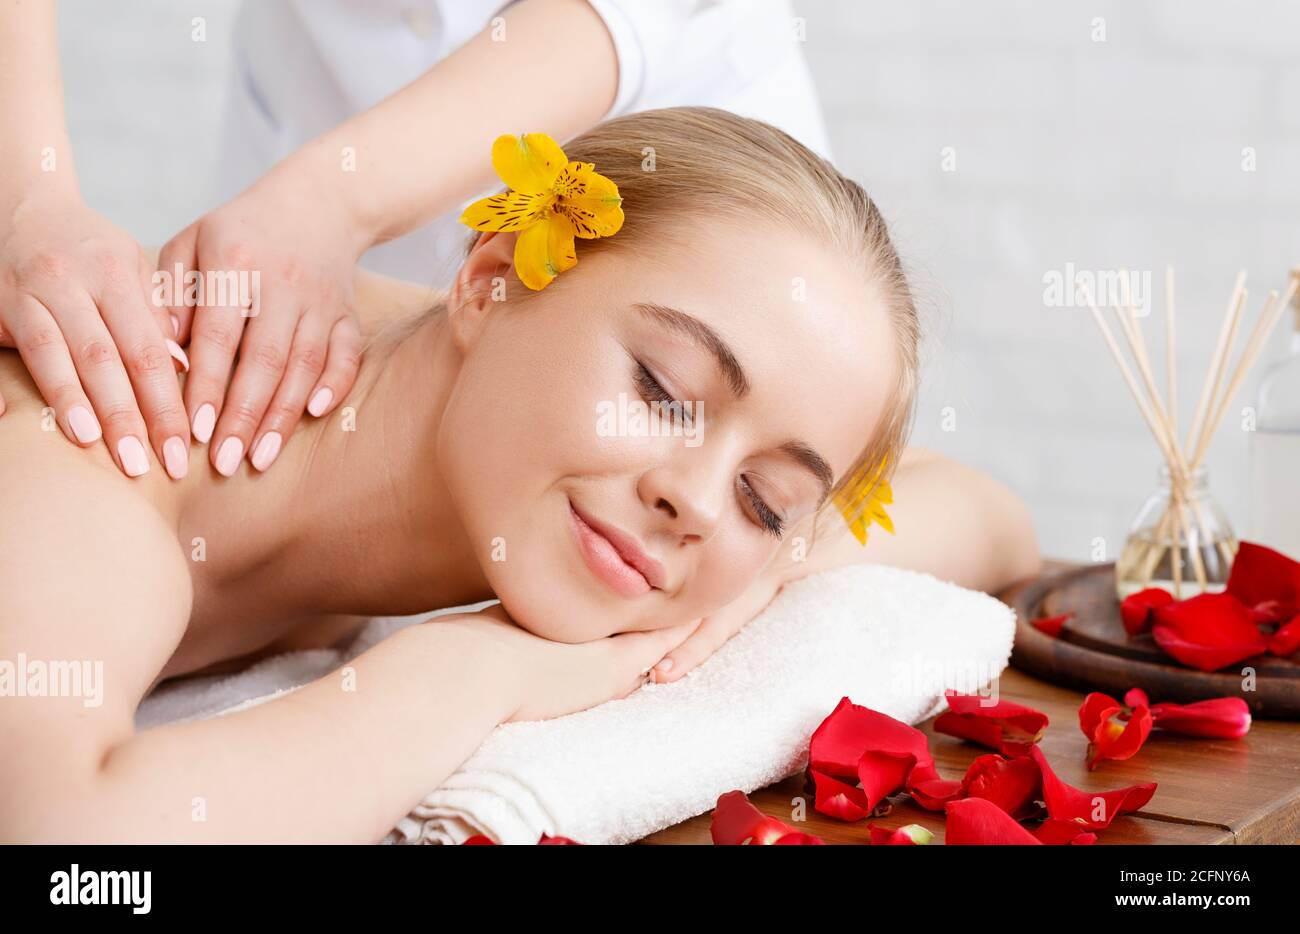 Détente et soins de beauté. Une fille souriante se trouve sur une table de massage aux pétales de fleurs Banque D'Images